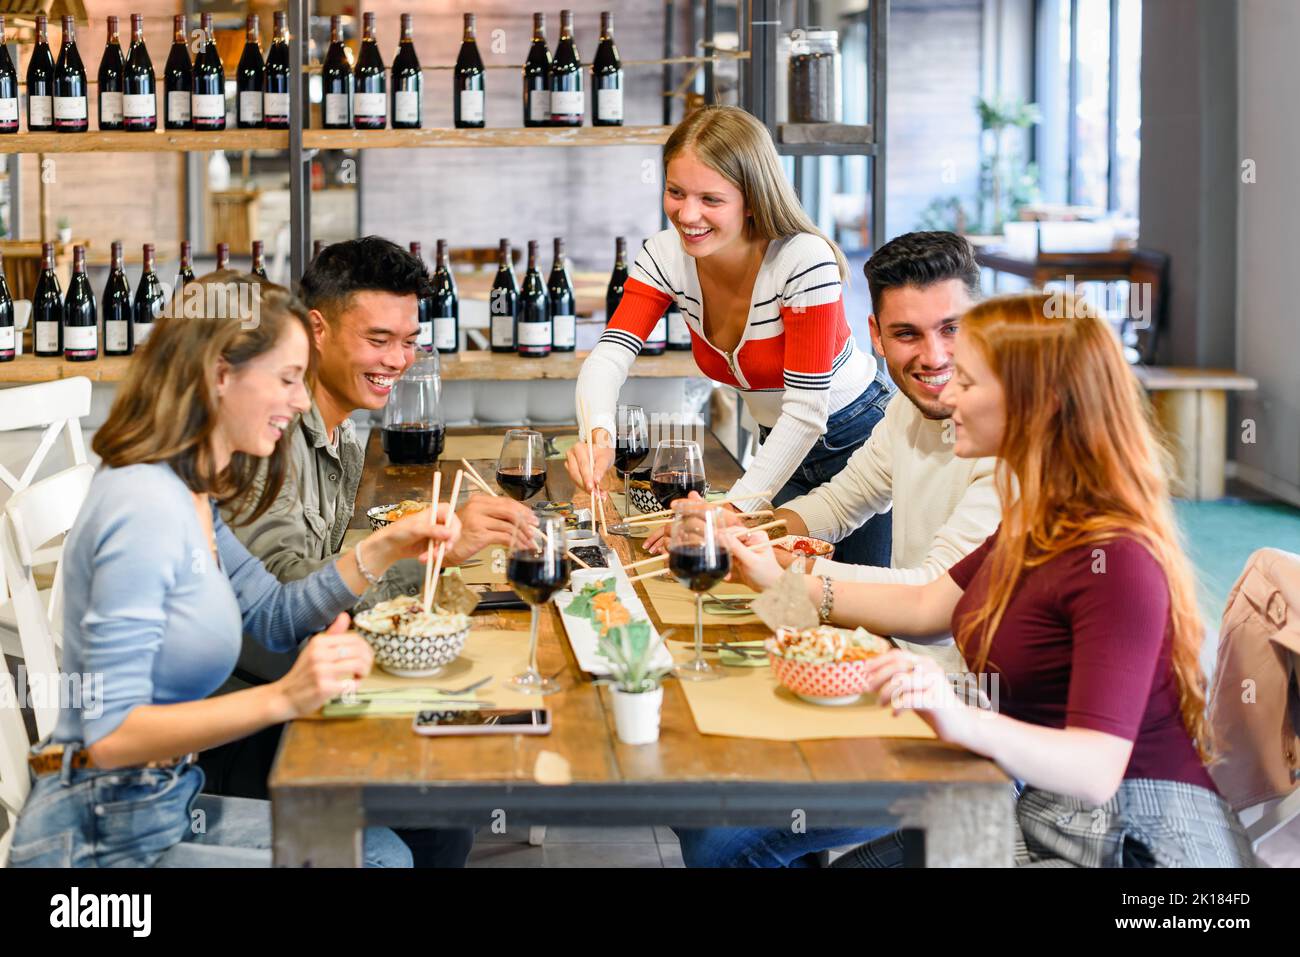 Amici diversi e positivi che mangiano cibo delizioso a tavola con bicchieri di vino rosso durante la cena insieme in un ristorante moderno e luminoso Foto Stock